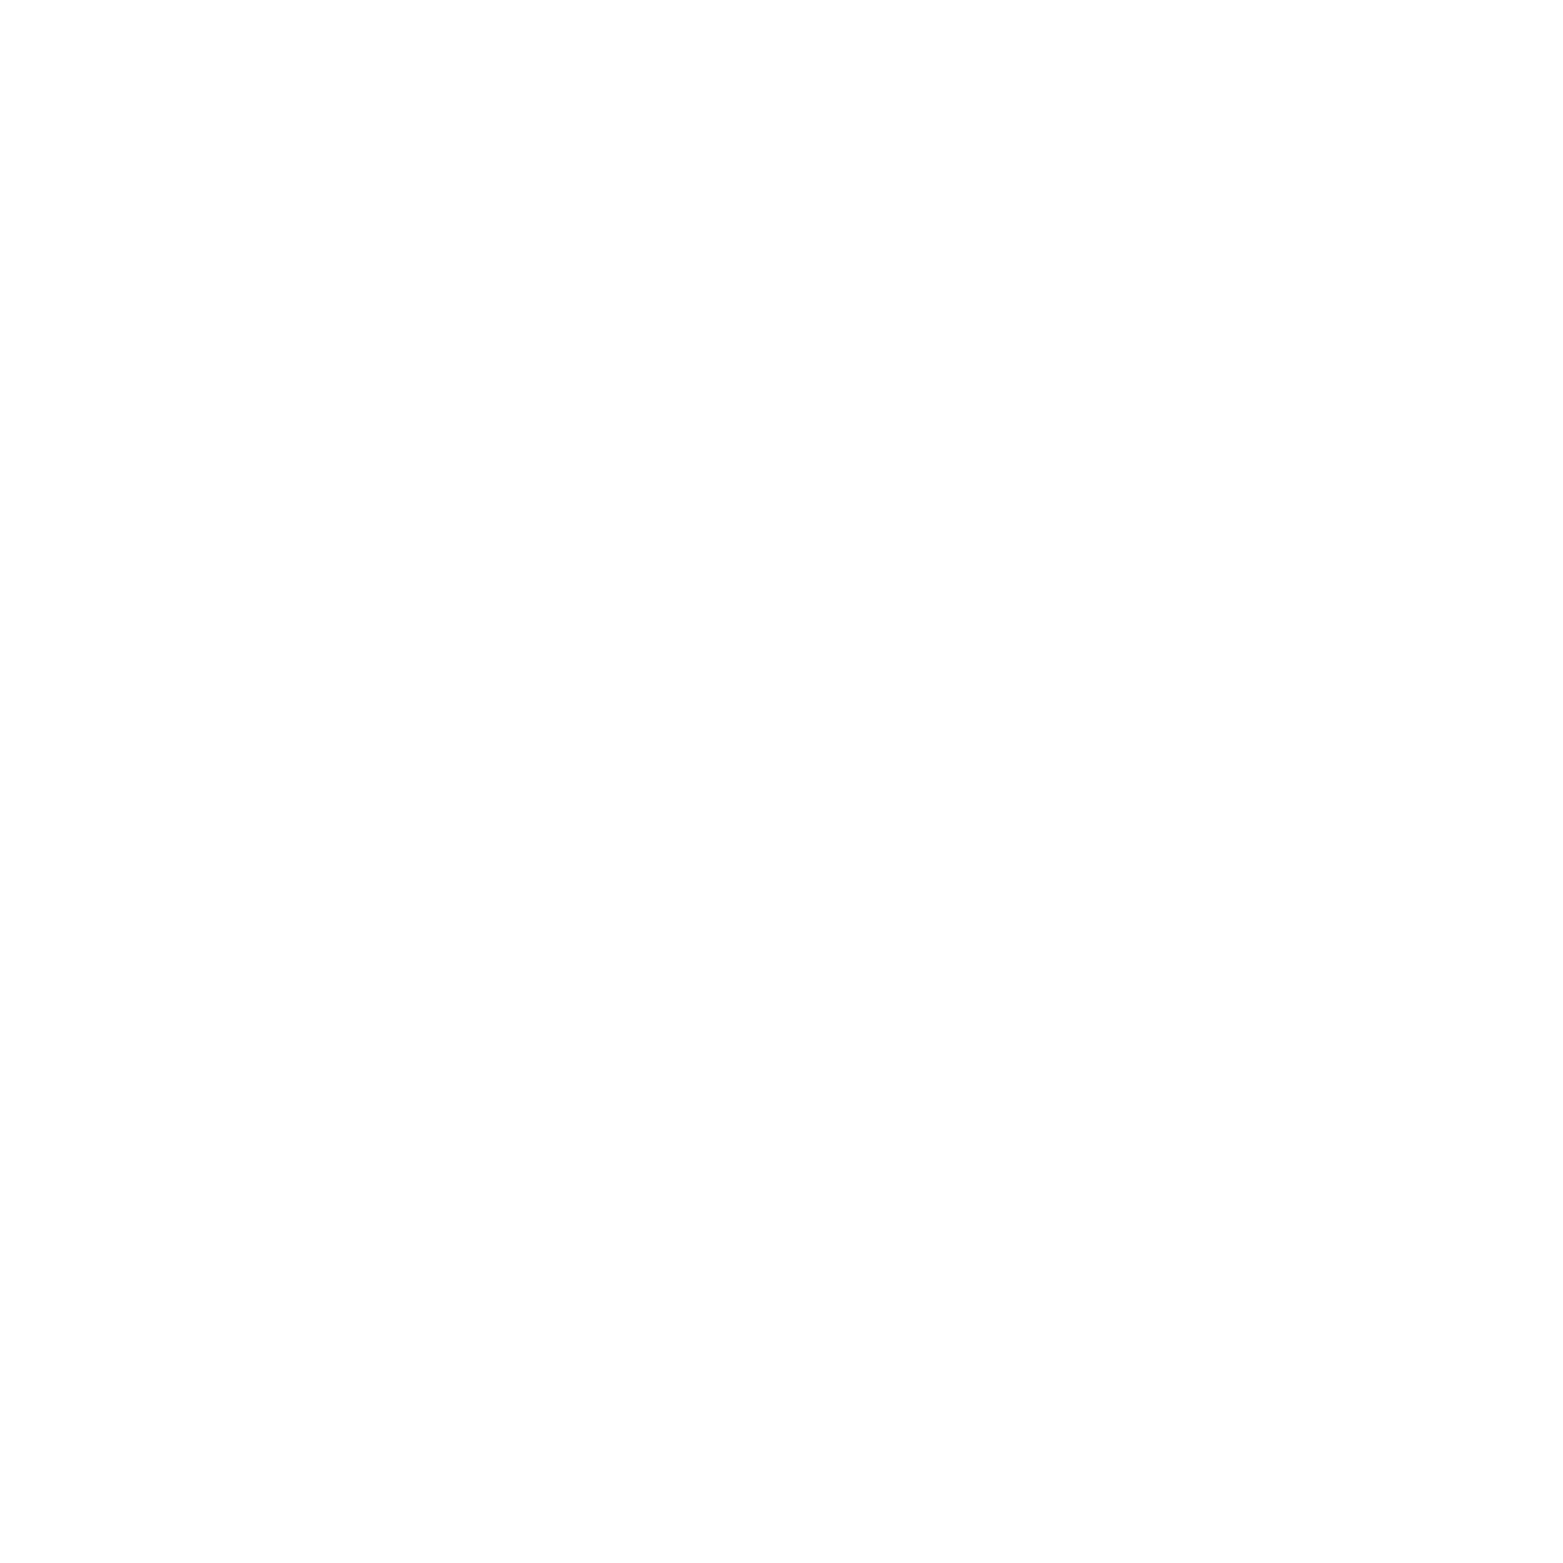 Eesti Laskurliit